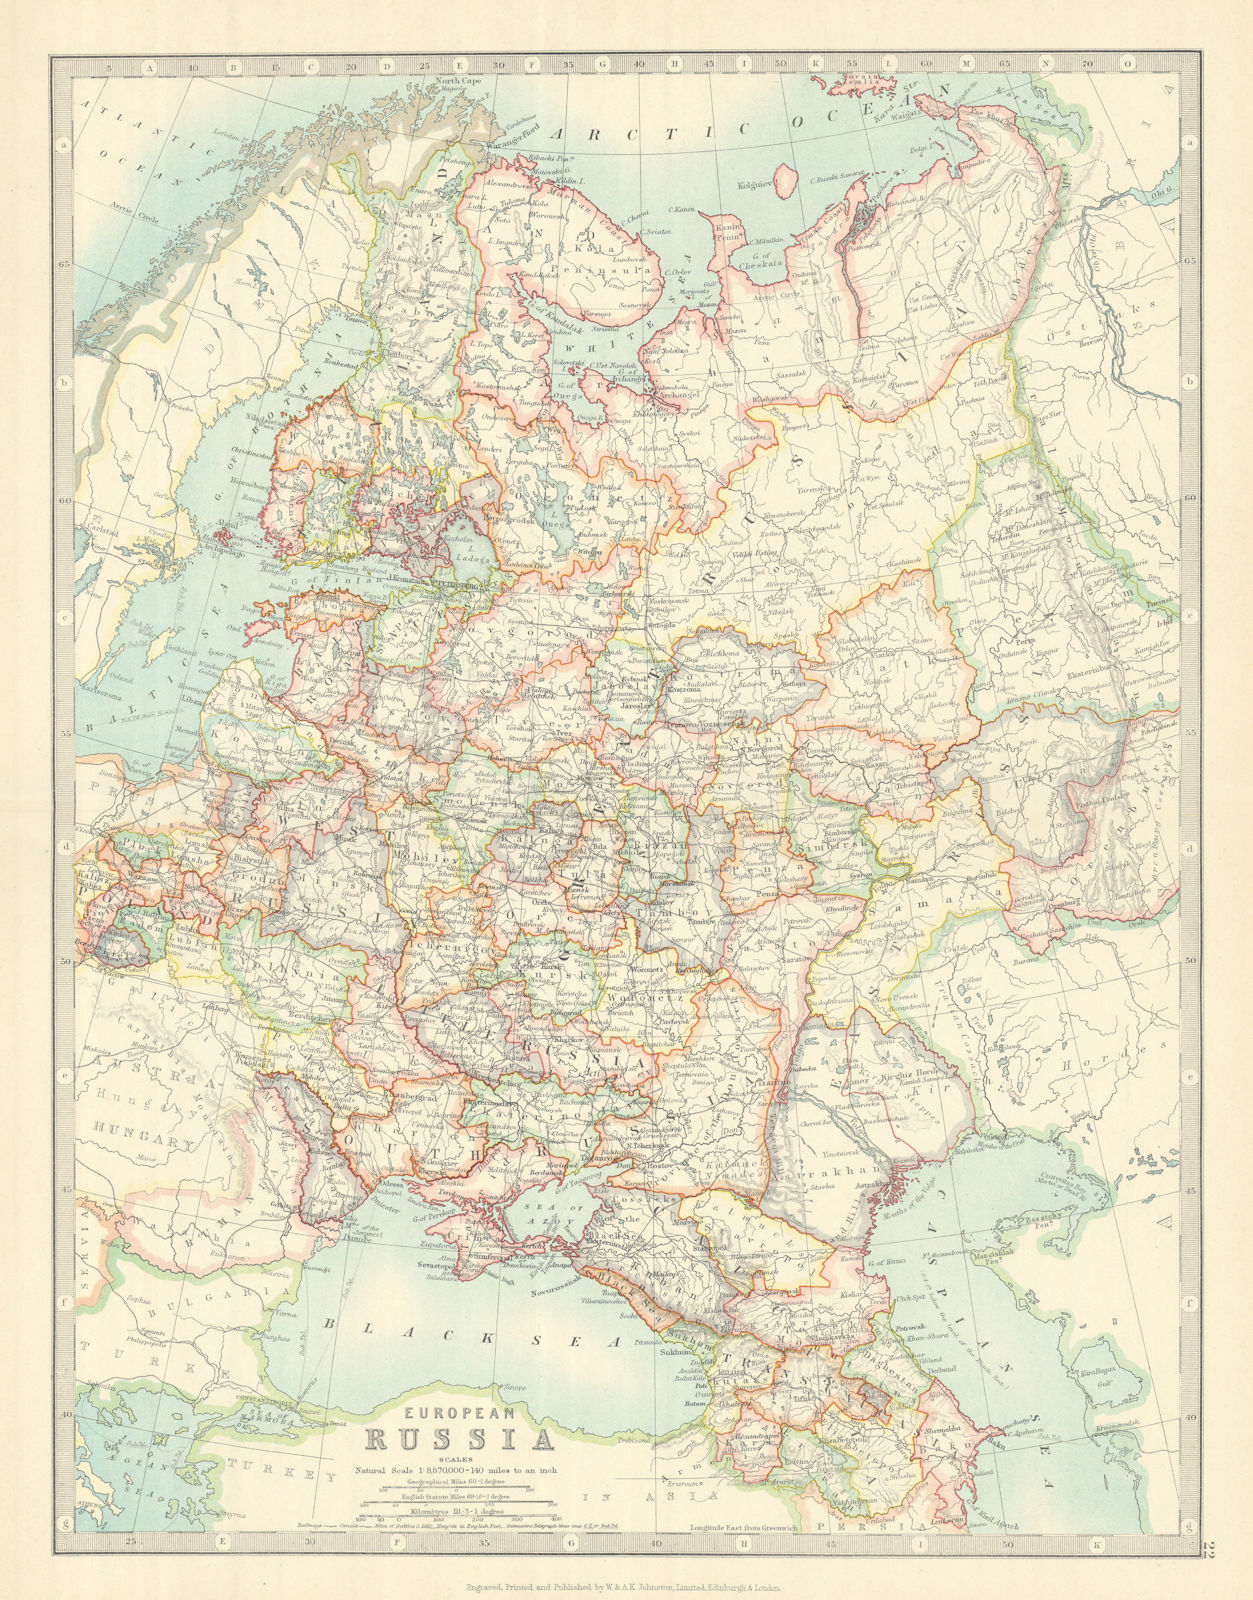 EUROPEAN RUSSIA. 1812 Napoleonic battlefields are marked. JOHNSTON 1913 map